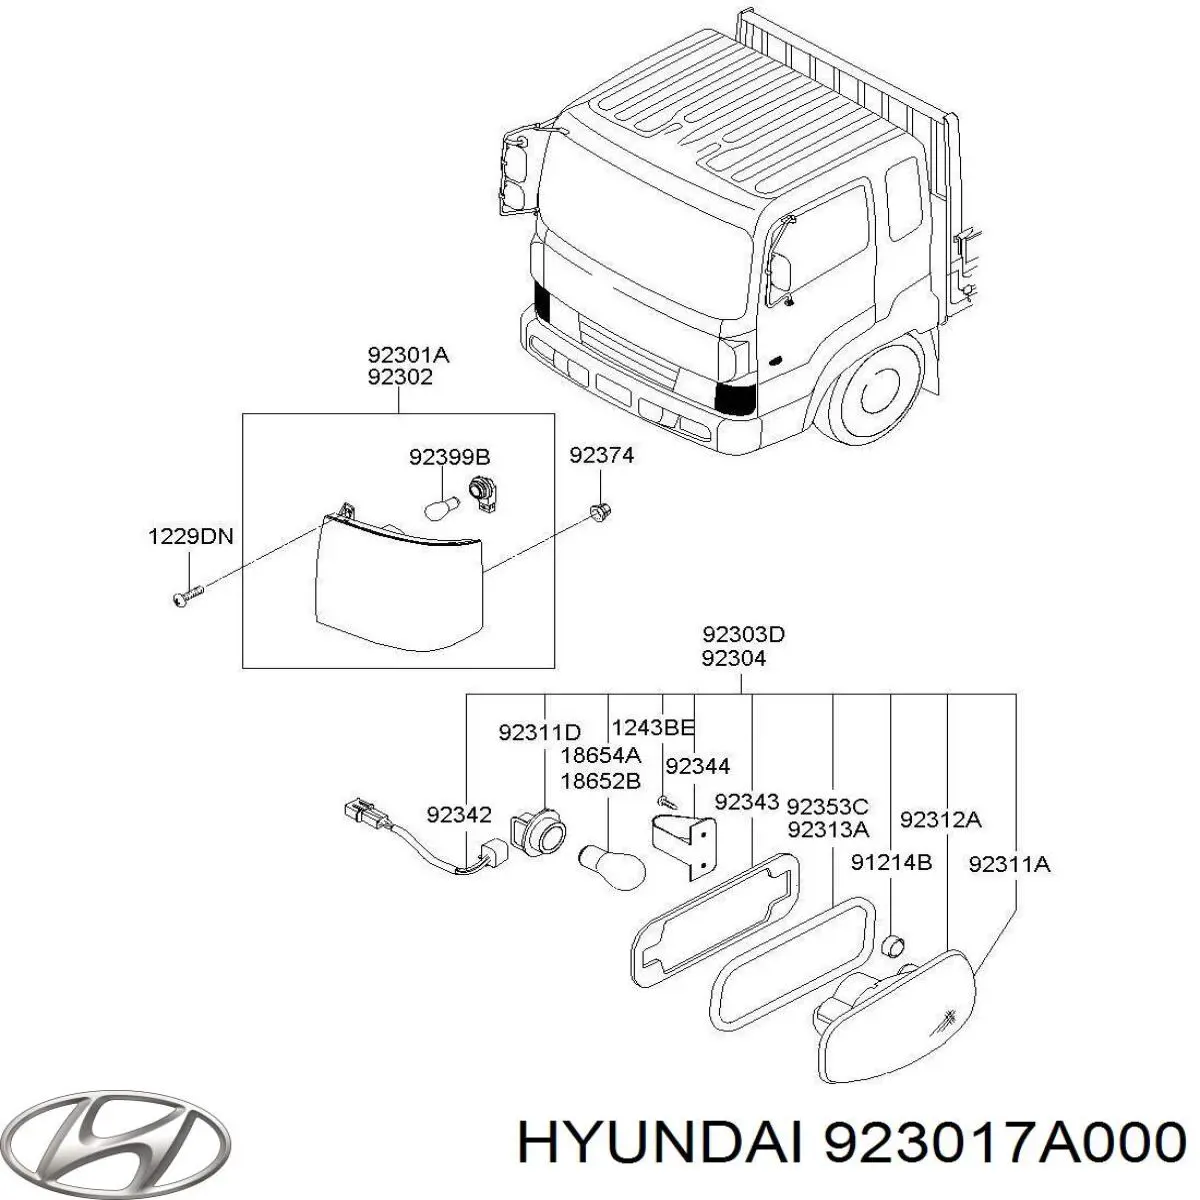 923017A000 Hyundai/Kia 